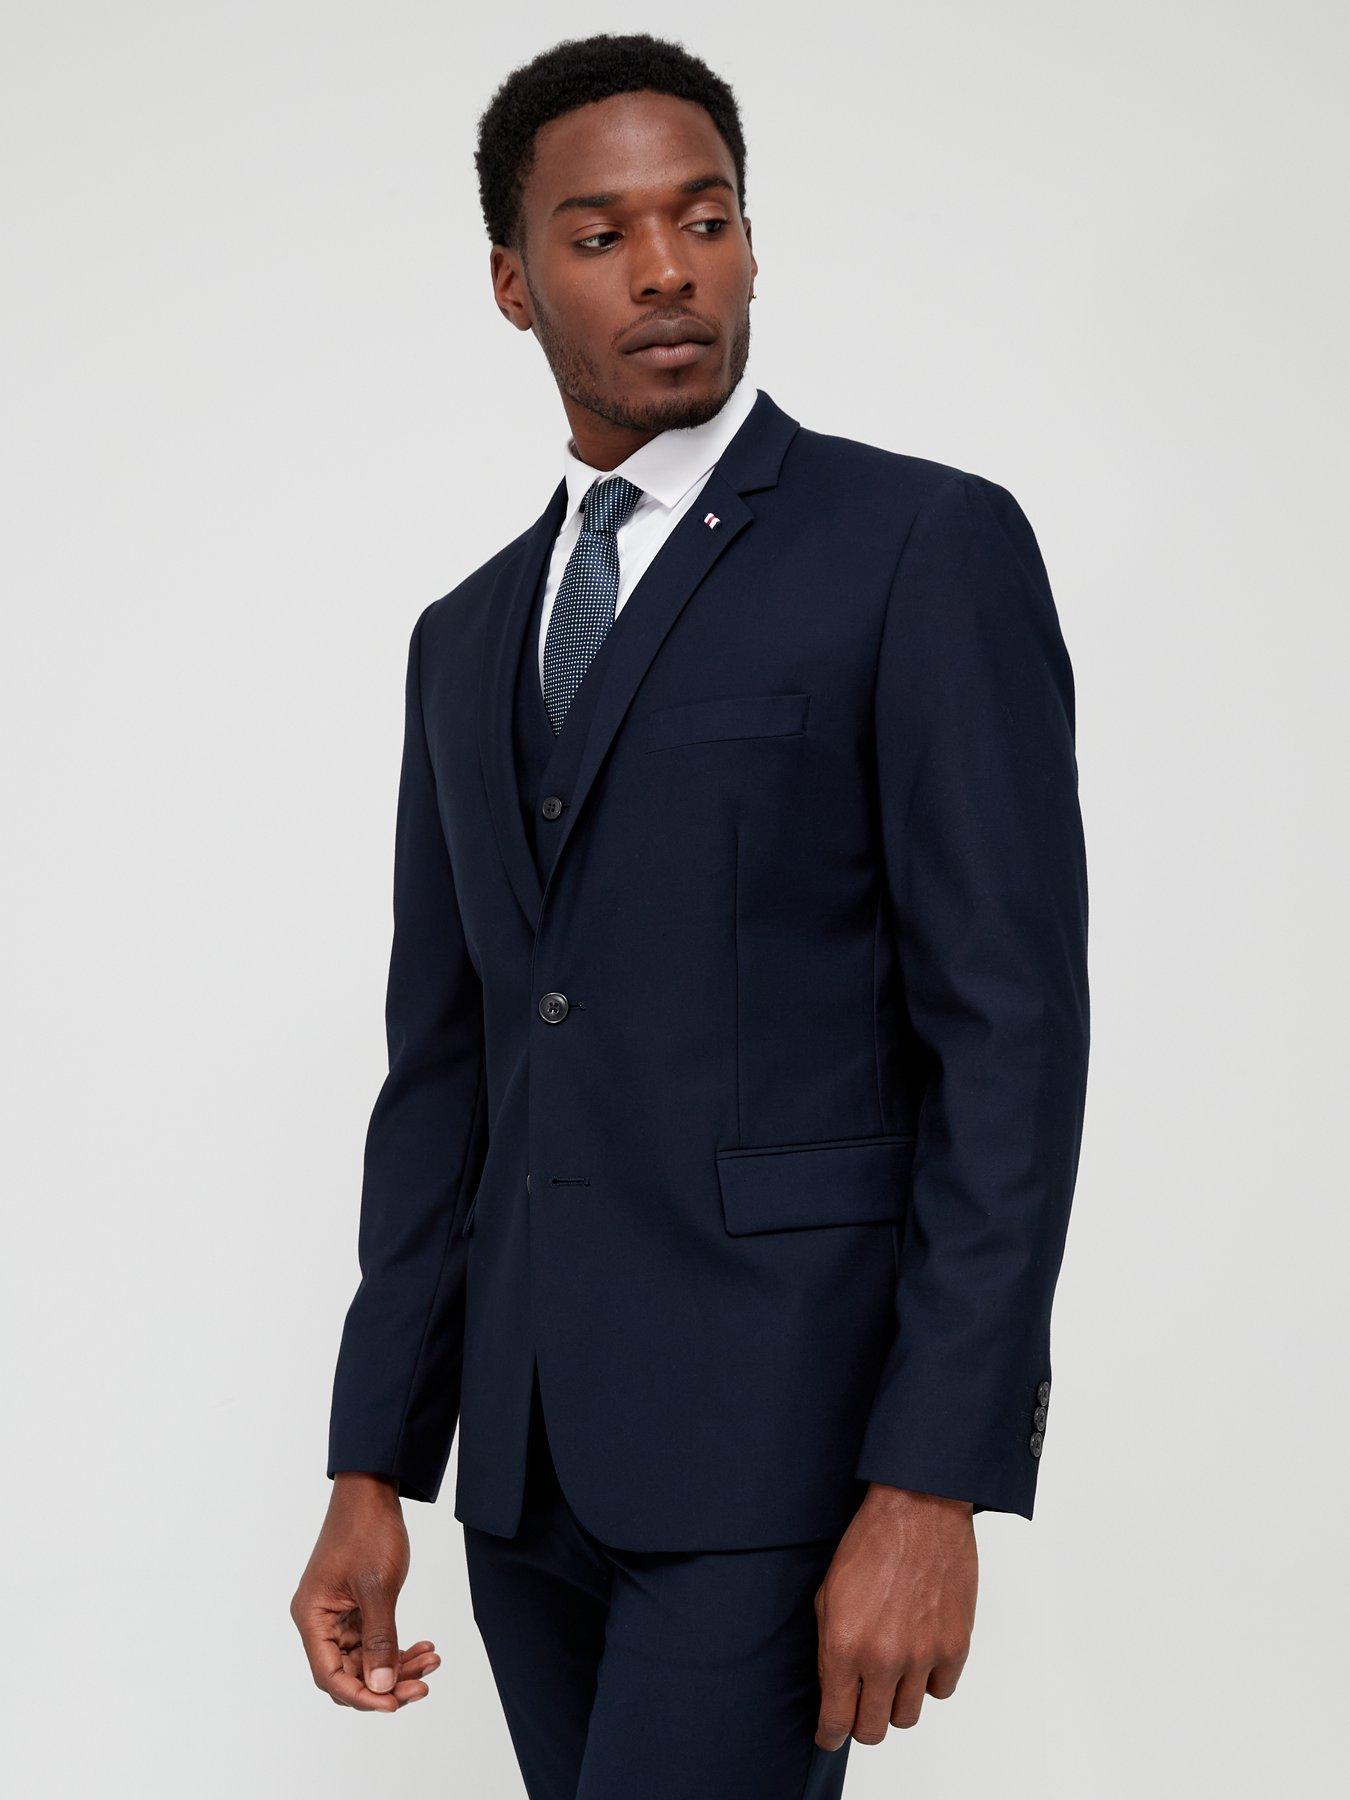 Navy Blue Single discount 64% NoName Tie/accessory MEN FASHION Suits & Sets Elegant 